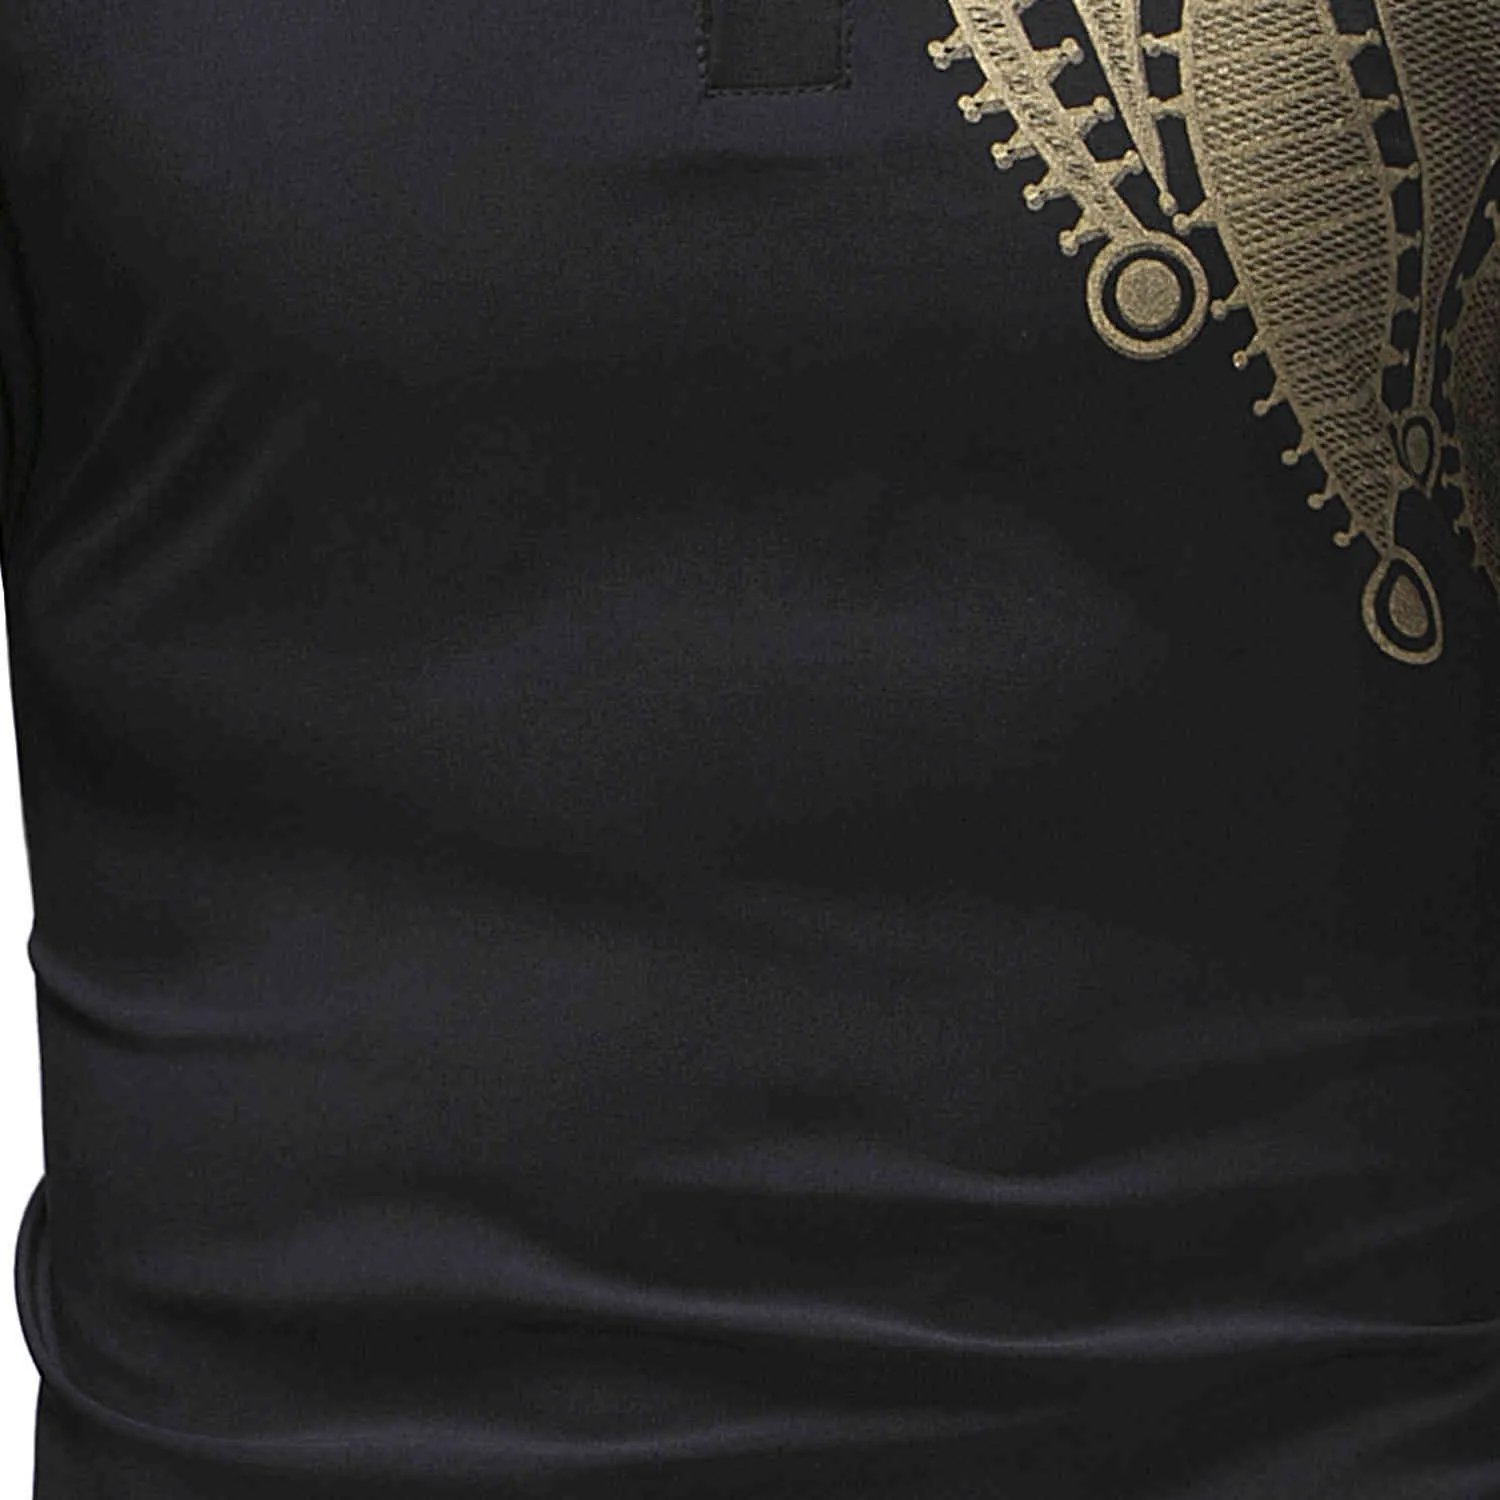 Paisley Schwarz Hemd Männer Afrikanischen Stil Schlanke Lange Robe Herren Kleidung Ethnische Dashiki Camisas Bazin Tops Drucken T Shirts 210524261I